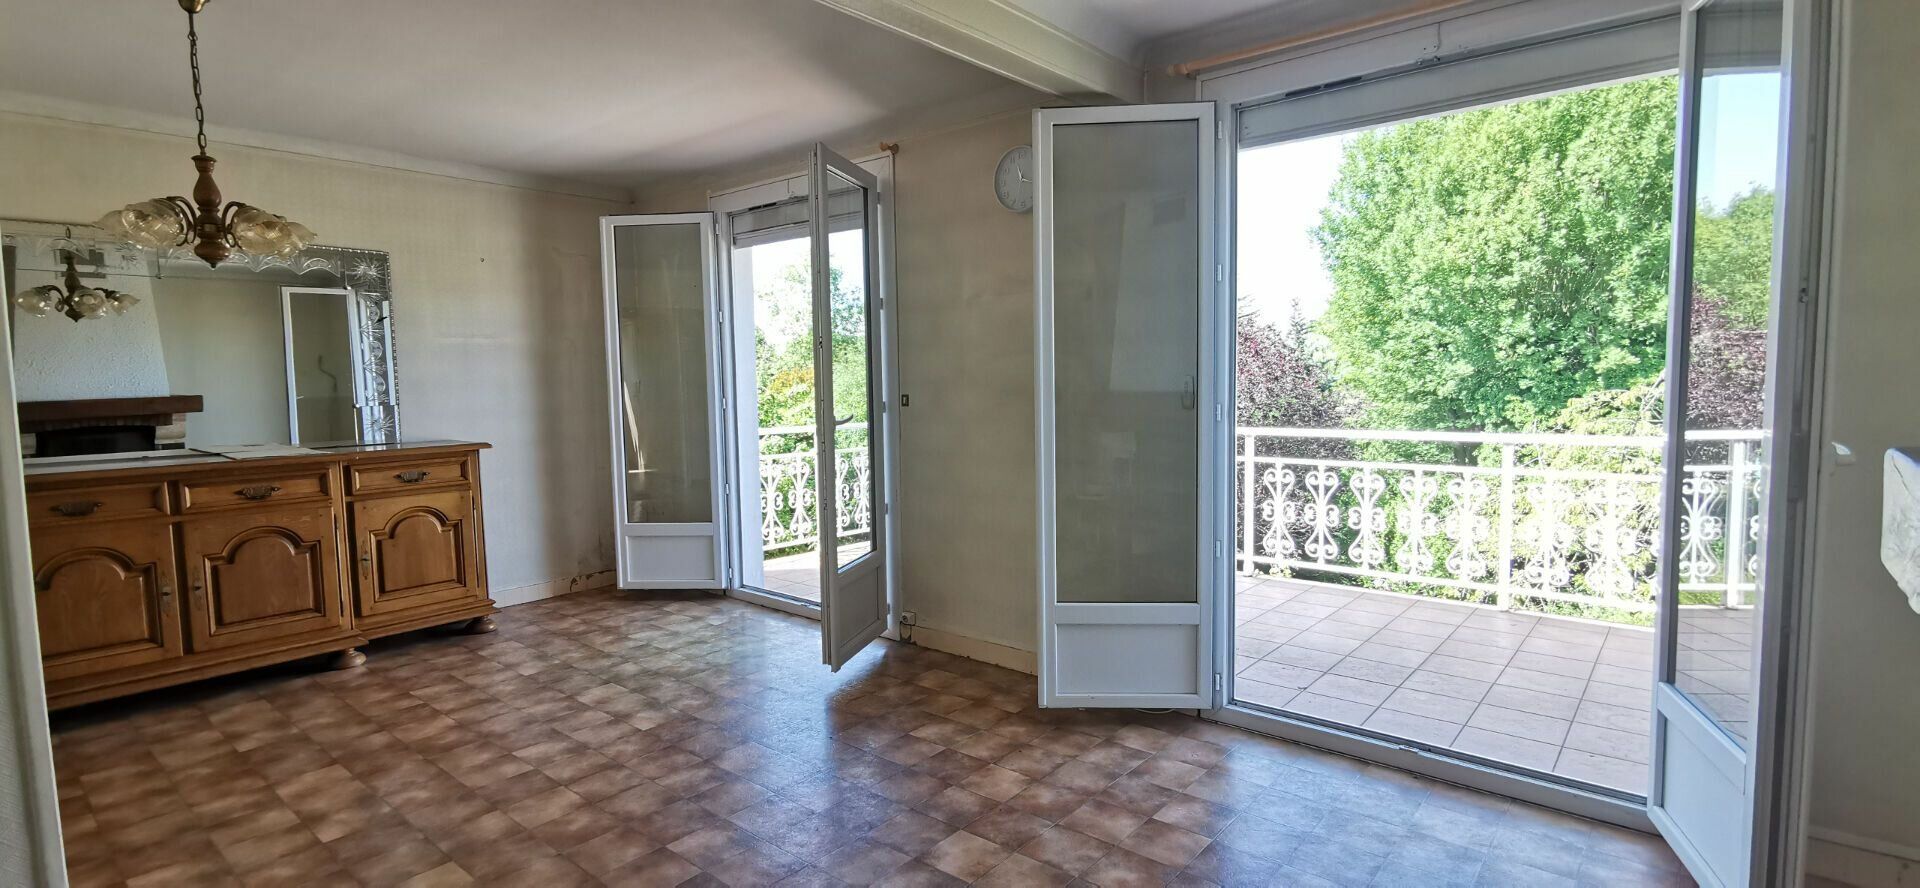 Maison à vendre 4 76m2 à Boussy-Saint-Antoine vignette-6